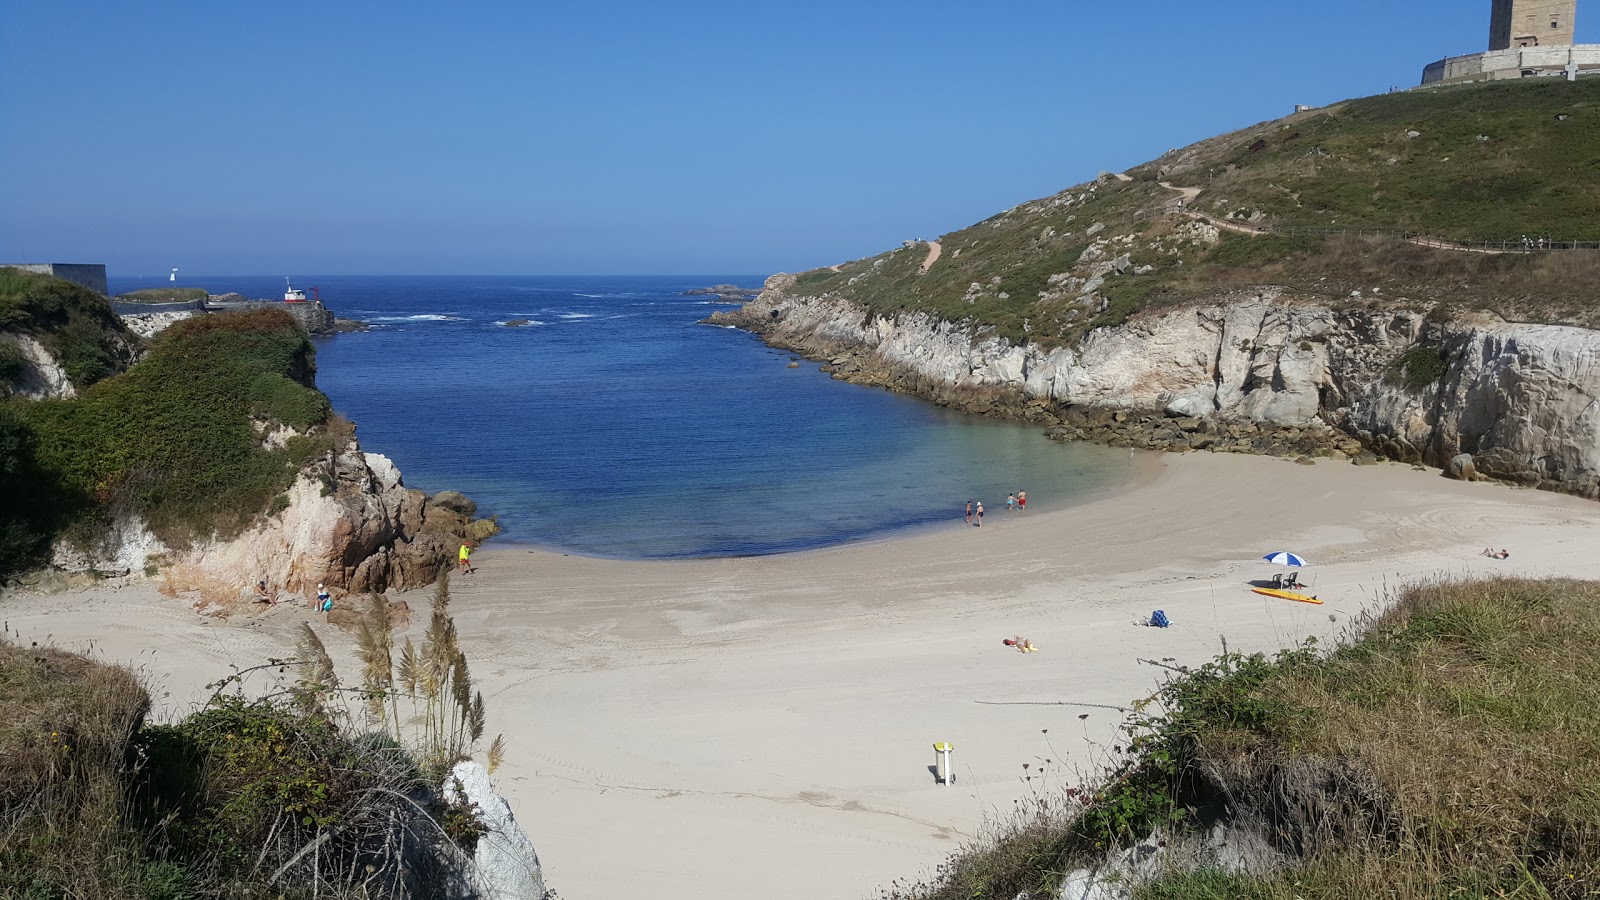 Fotografie cu Praia de Adormideiras II cu o suprafață de nisip fin alb